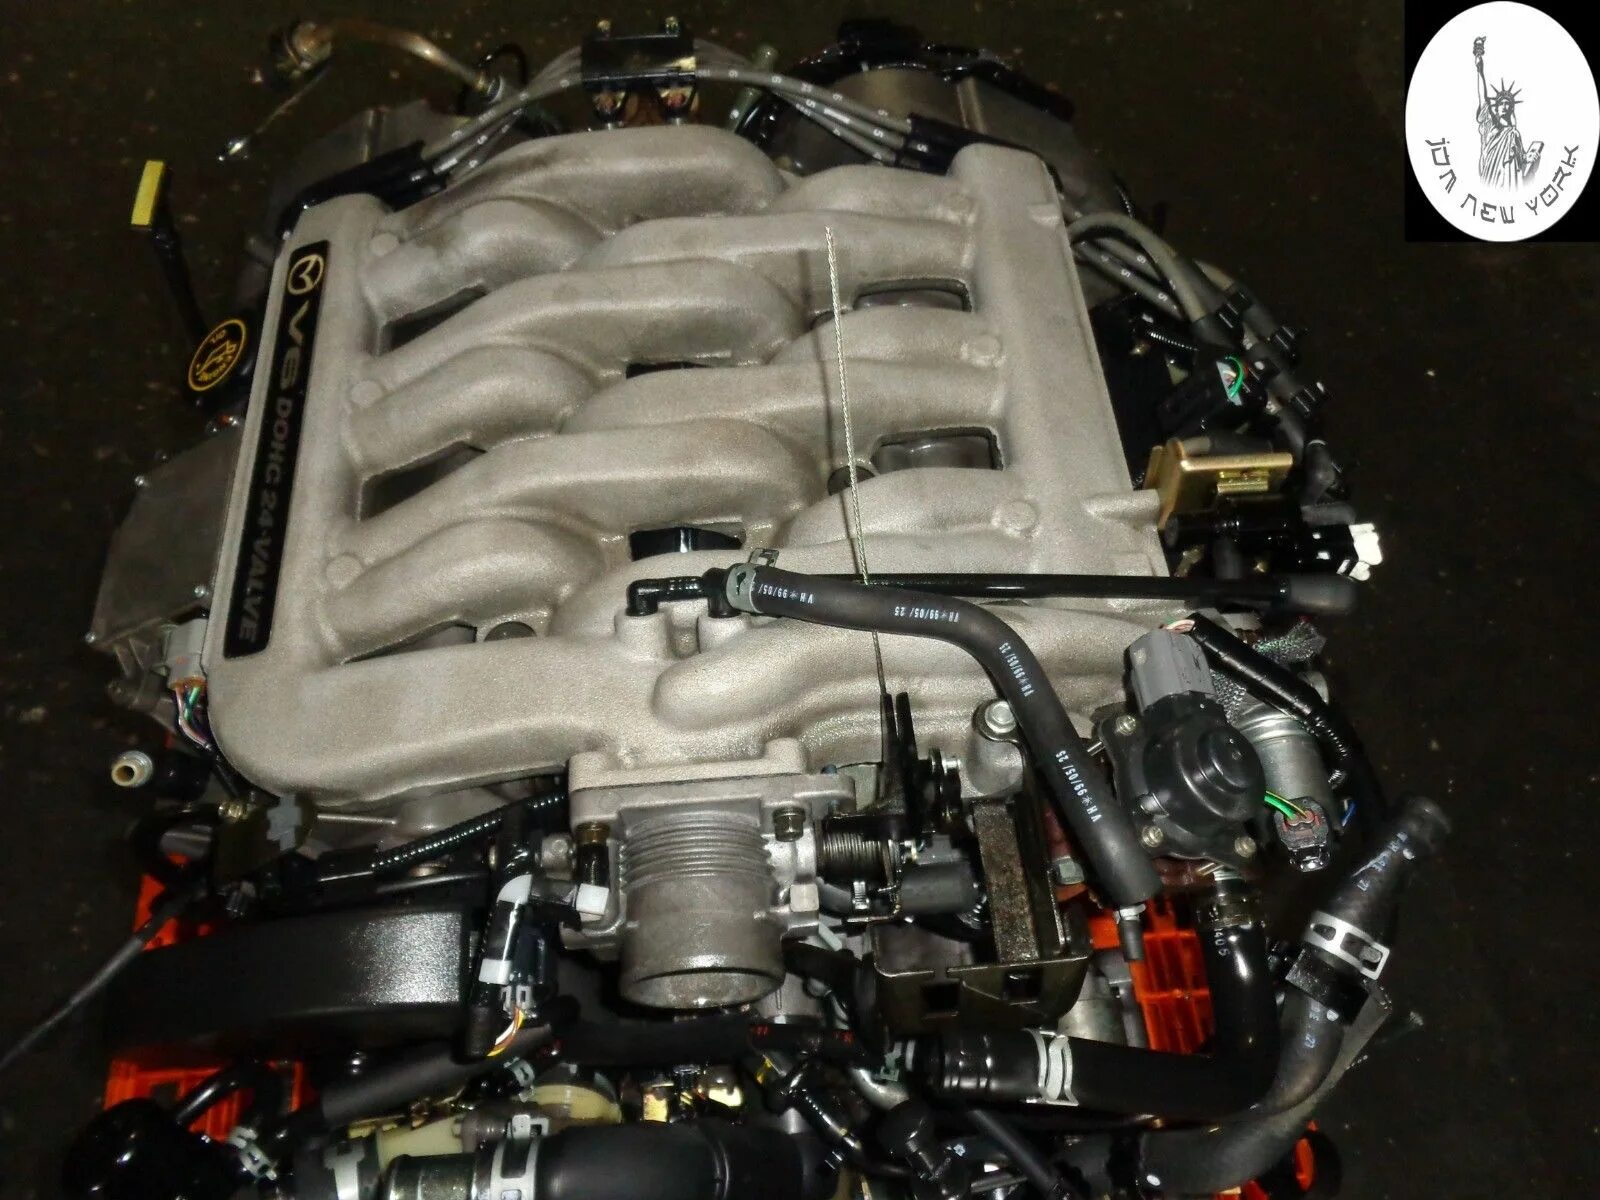 Mazda MPV v6 2.5. Мазда MPV 2.5 v6 двигатель. Mazda МПВ 2,5 двигатель. Mazda MPV 3.2 двигатель. Двигатель мазда мпв 2.5